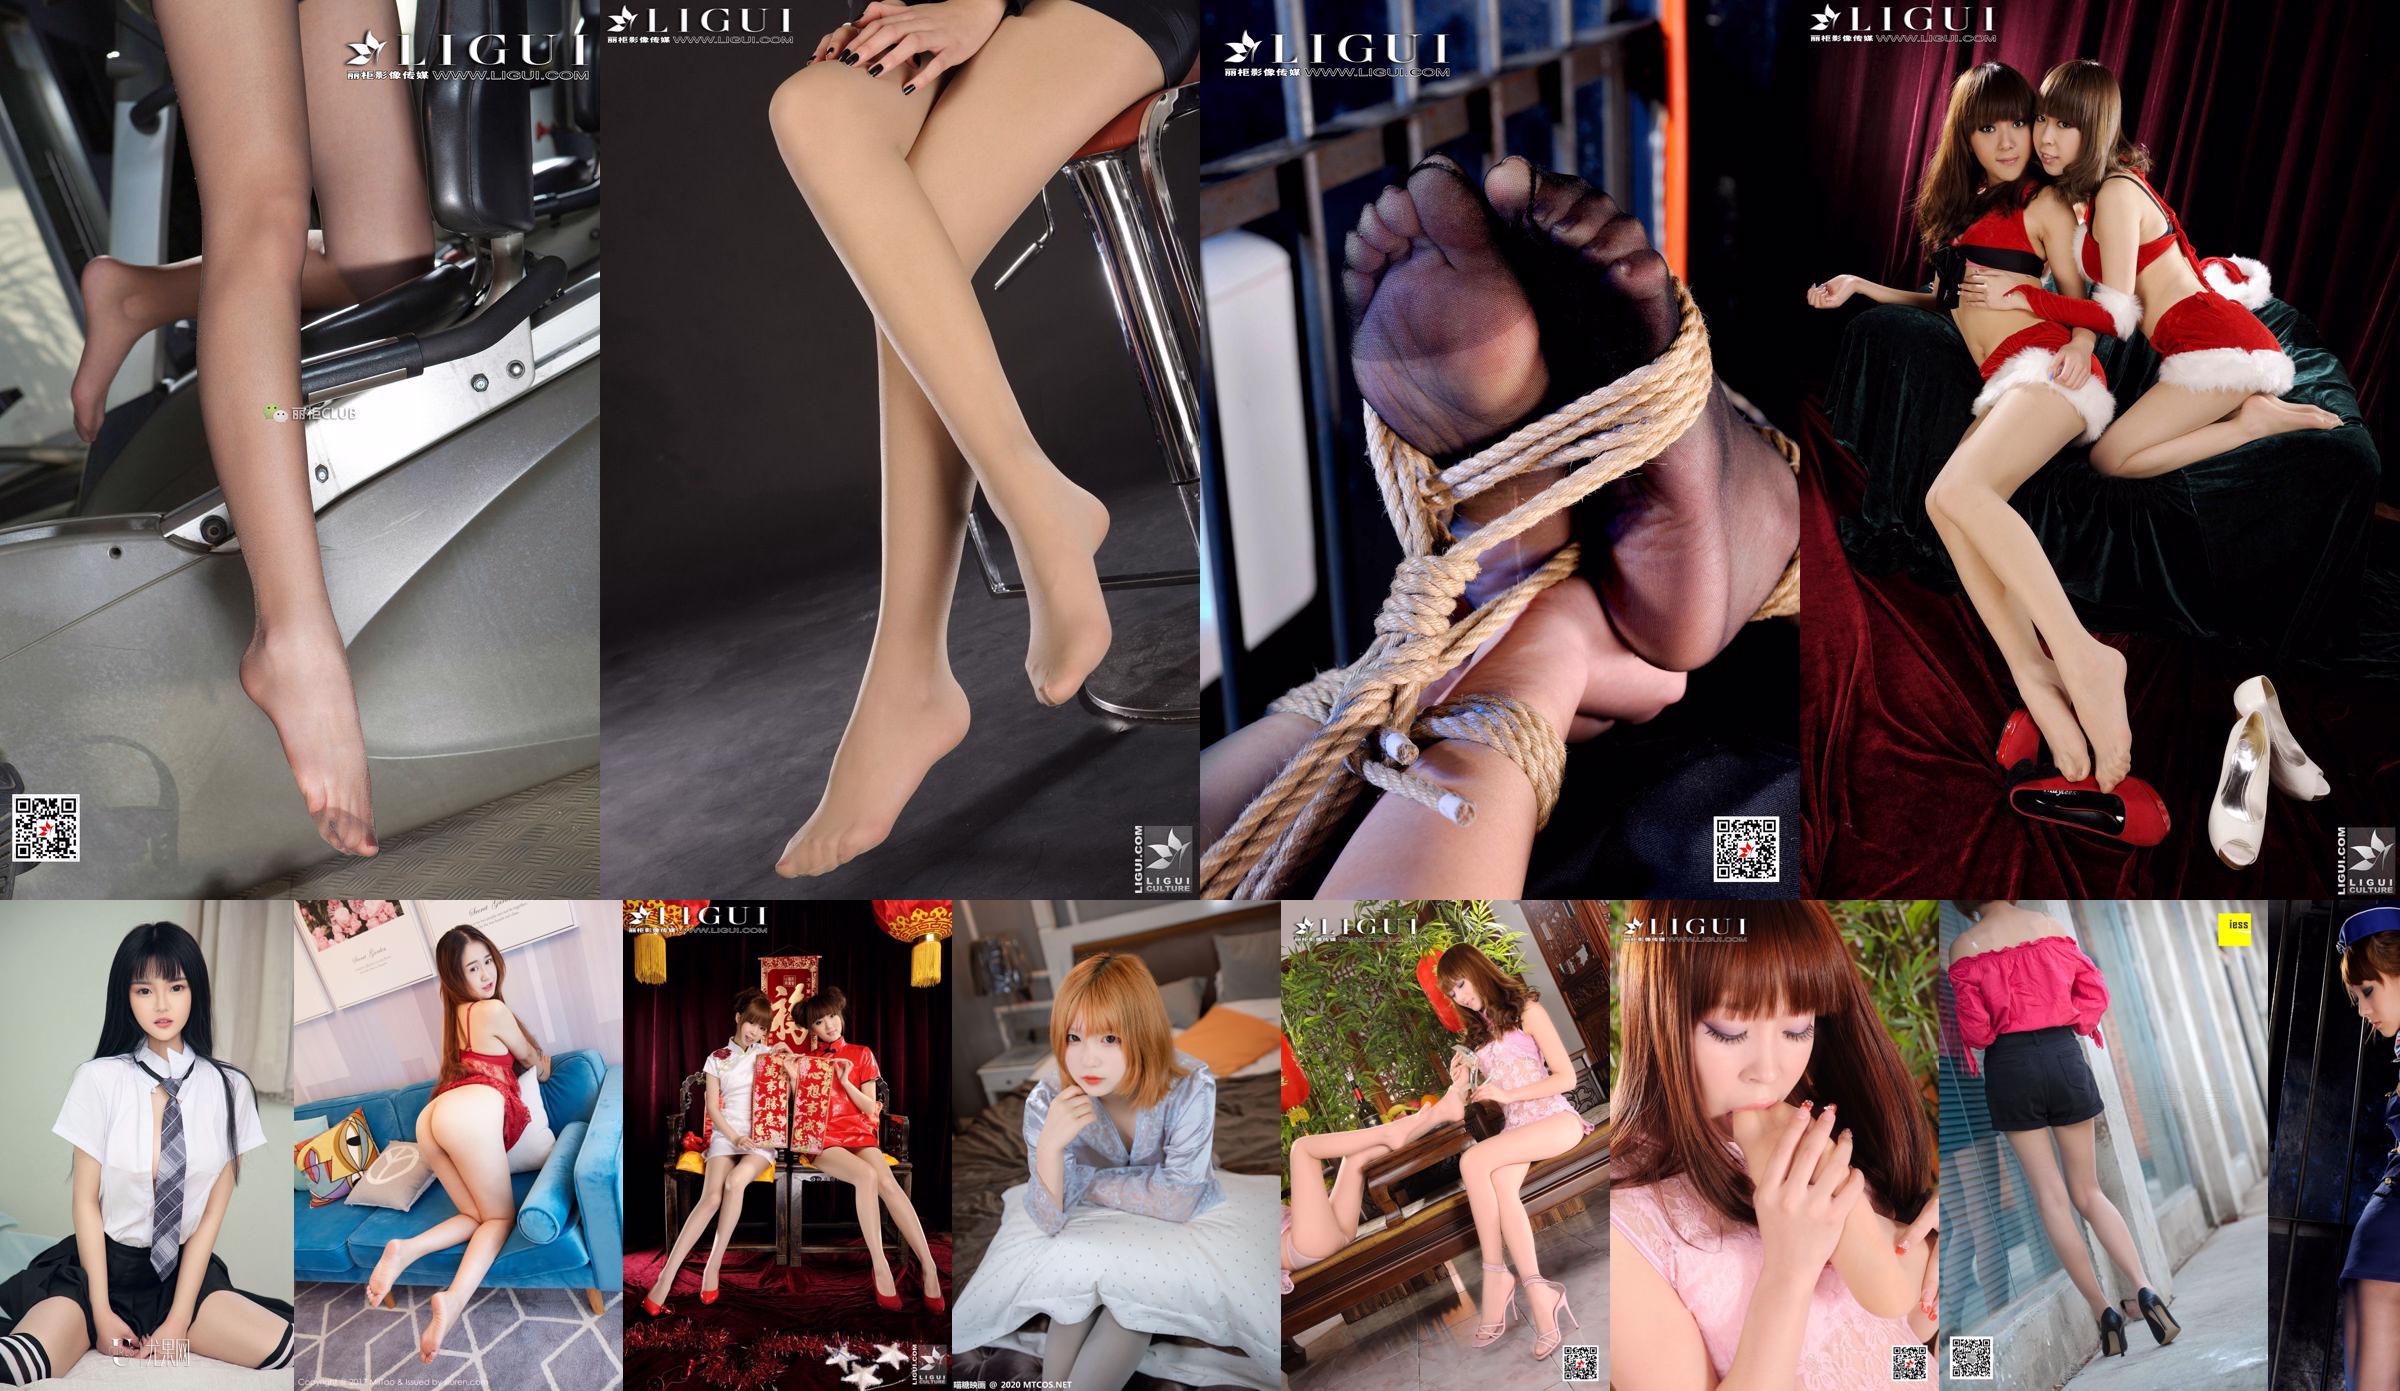 Model Momoko "Office Silk and Foot Show" obere und untere Kollektion [丽 柜 LiGui] Foto von schönen Beinen und Jadefüßen No.59d371 Seite 1